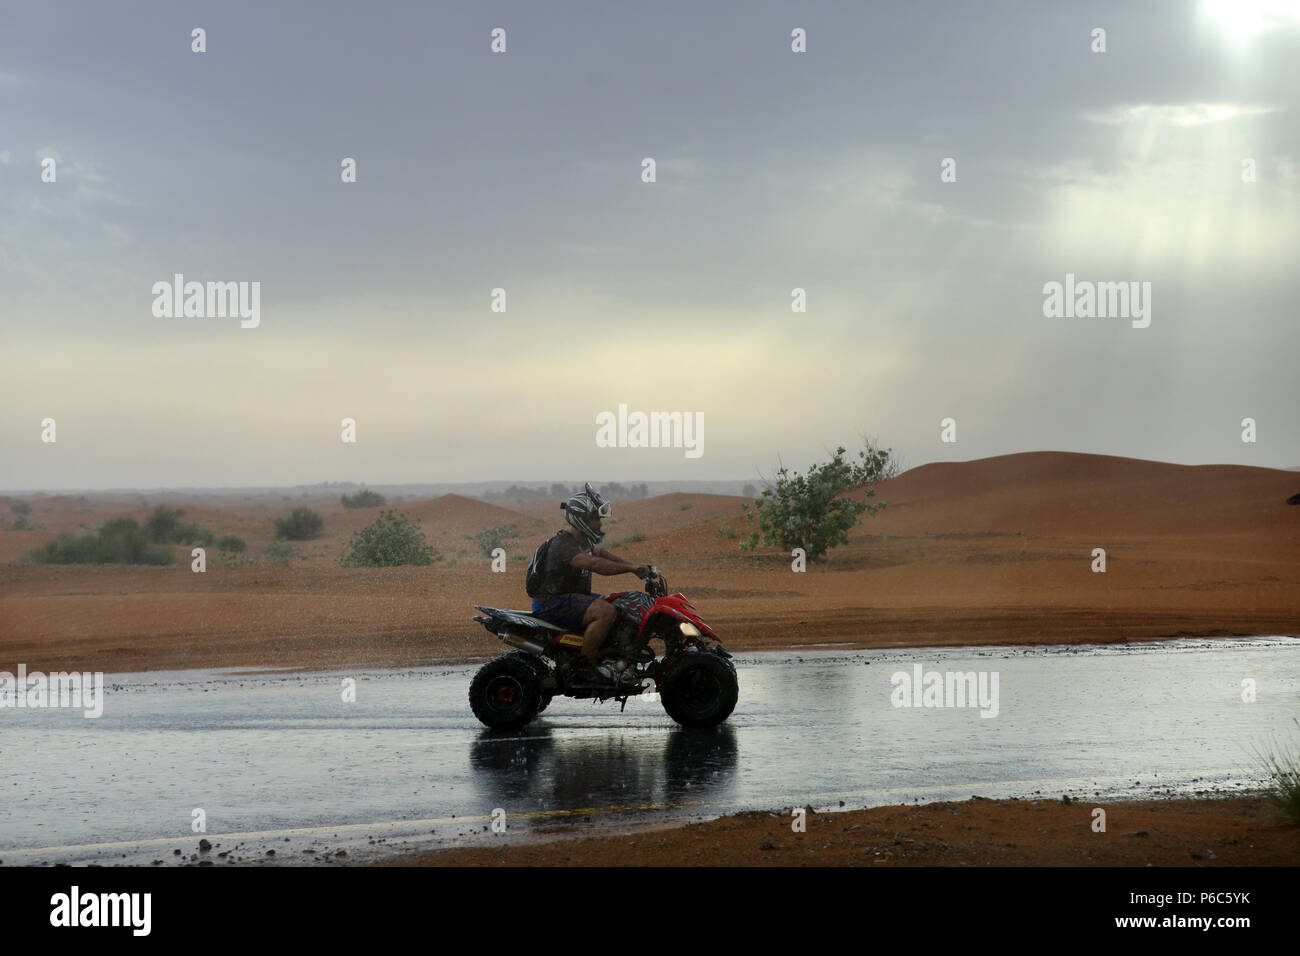 Dubai, United Arab Emirates, quad rider in the rain in the desert Stock Photo